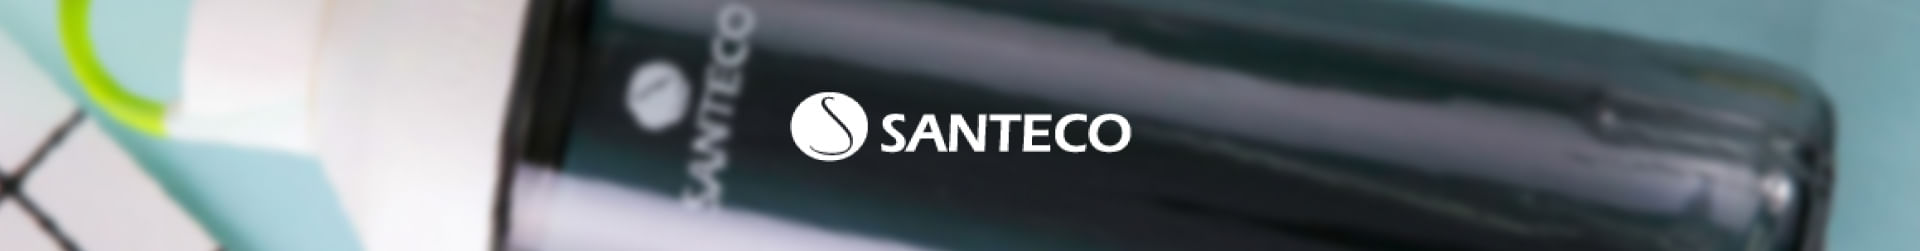 Encuentra todos los productos de la marca Santeco